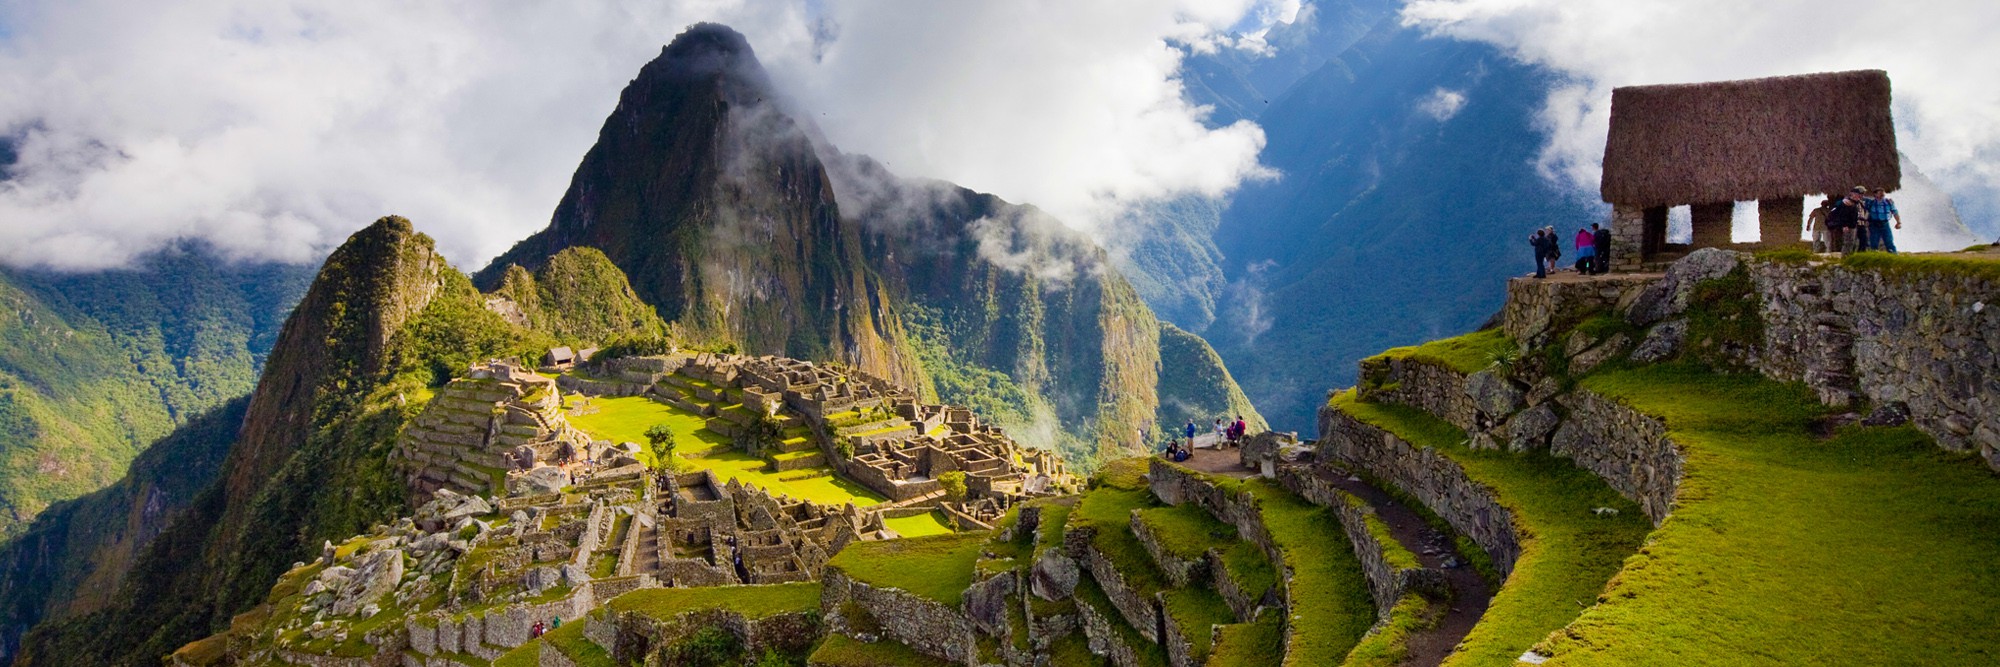 Trilha Machu Picchu